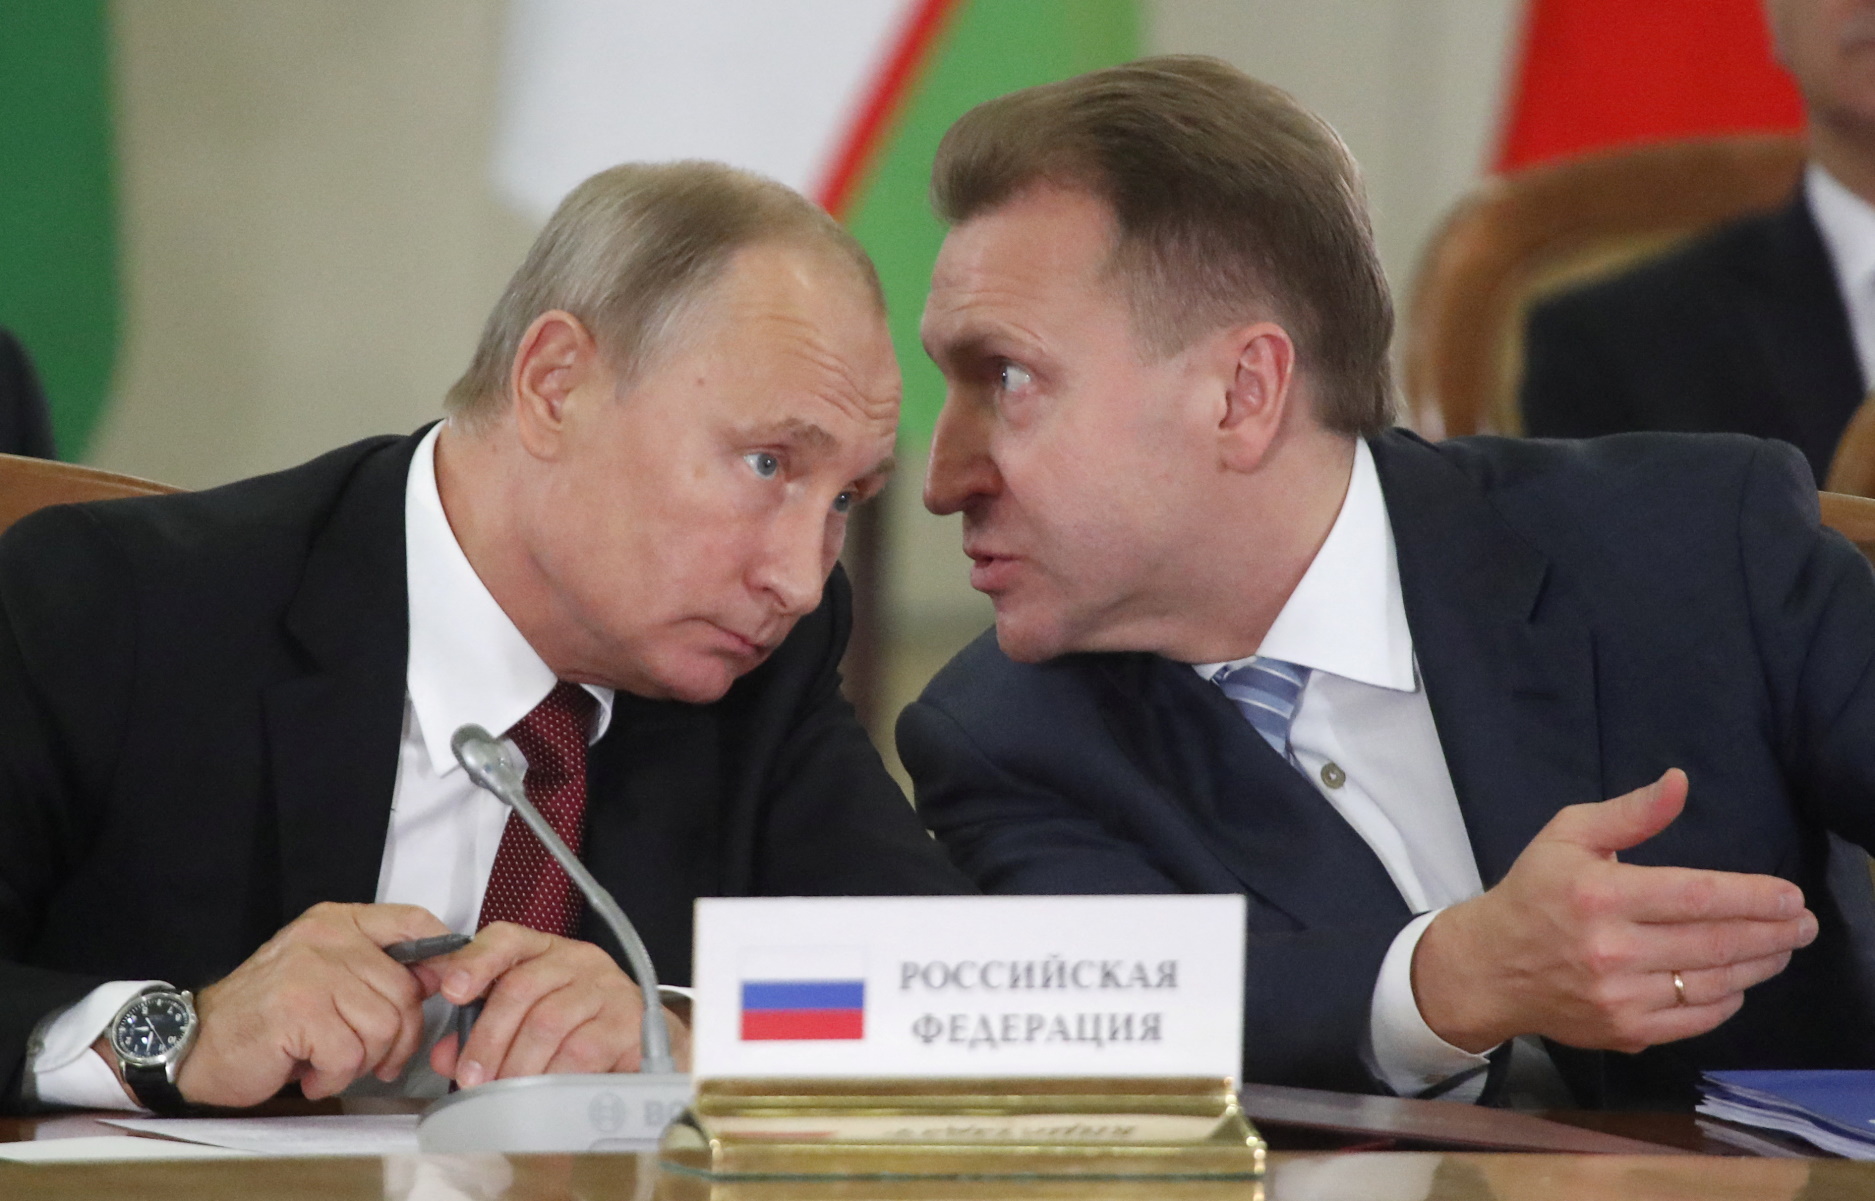 Πούτιν: Ολιγάρχες φίλοι του Ρώσου προέδρου έγιναν υπήκοοι Φινλανδίας με πλάγια μέσα